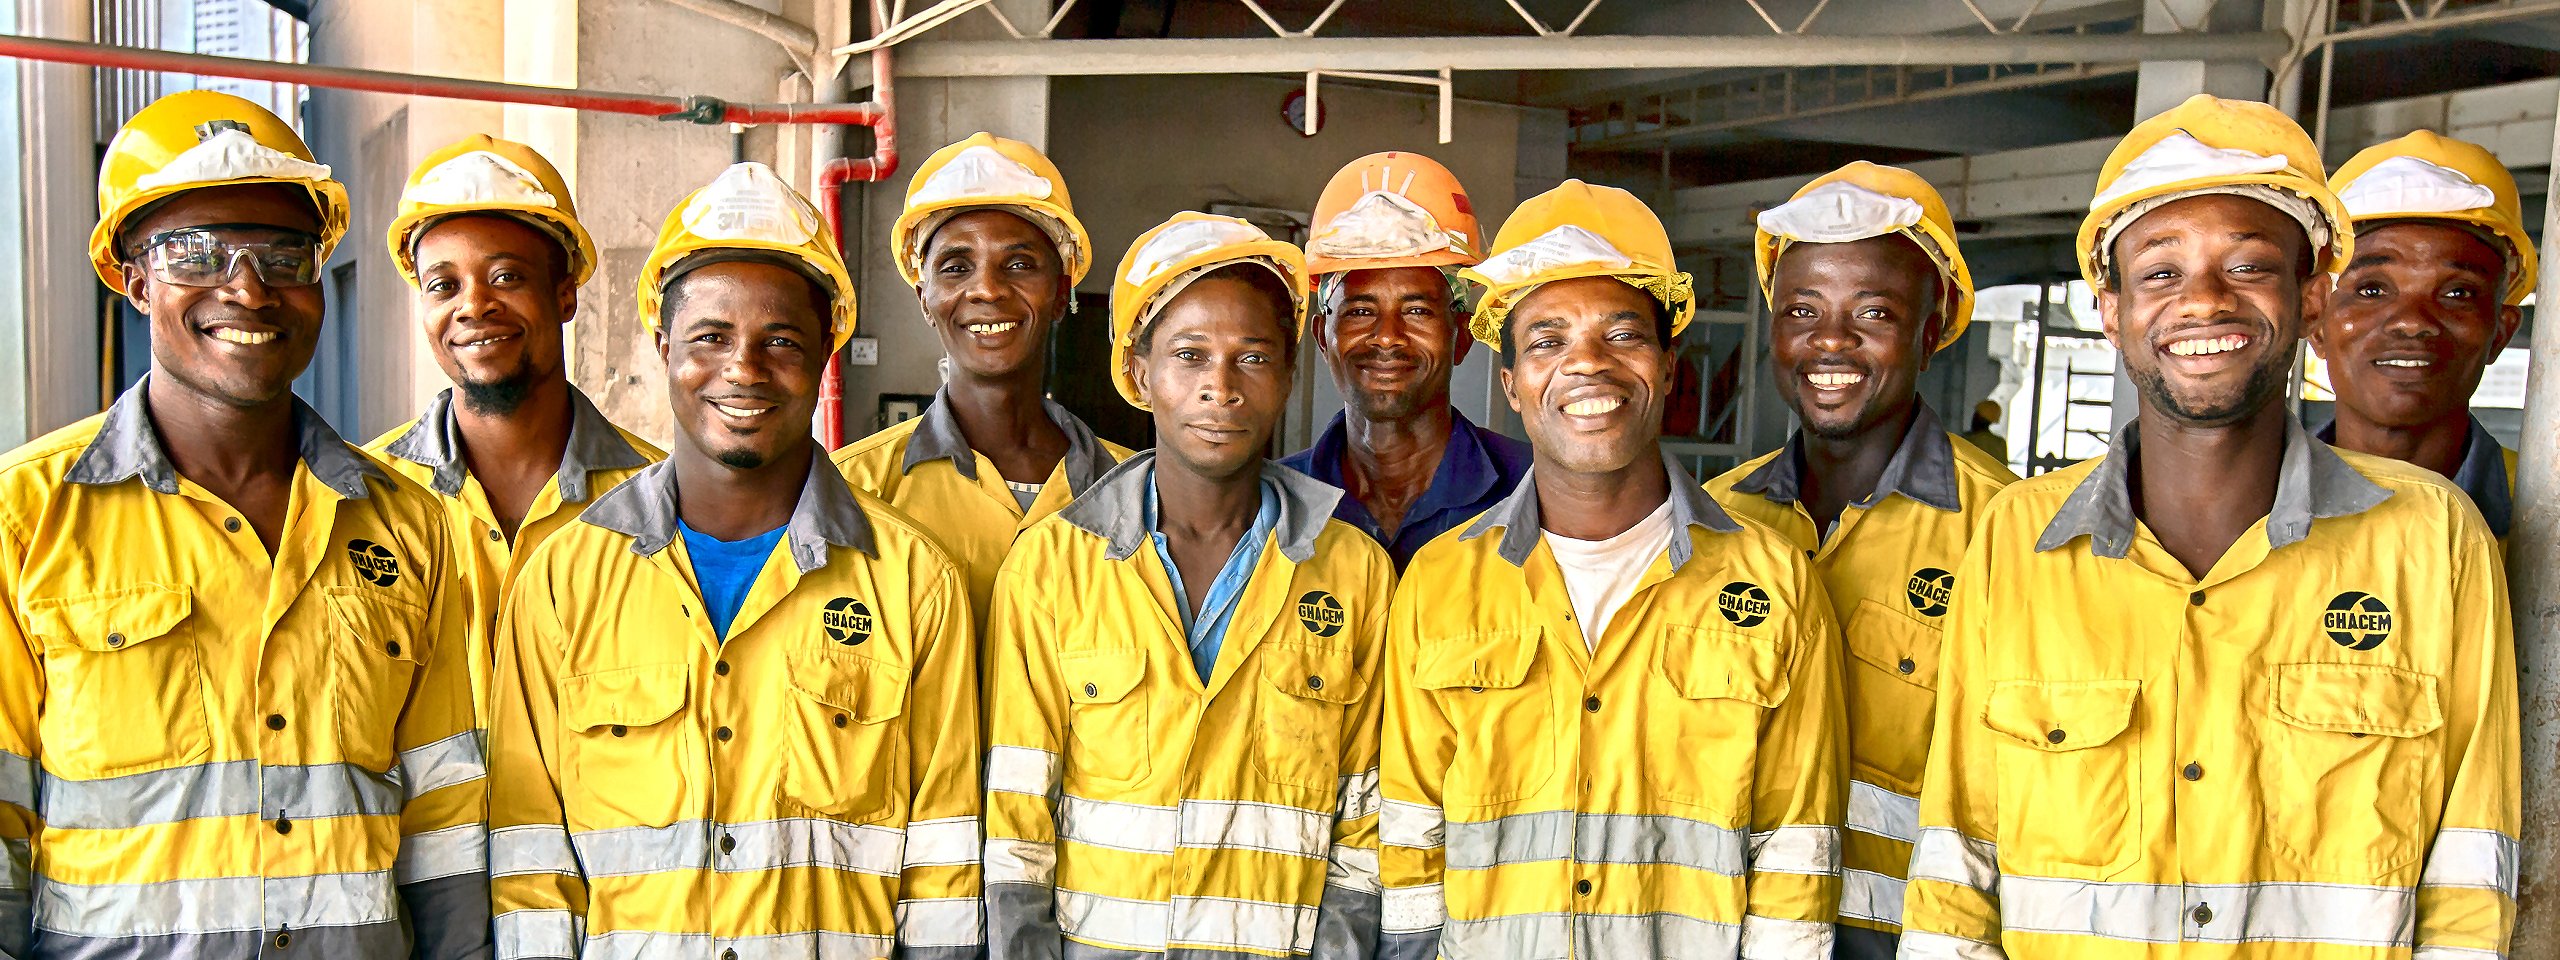 Zehn Bauarbeiter aus Afrika lächeln in die Kamera